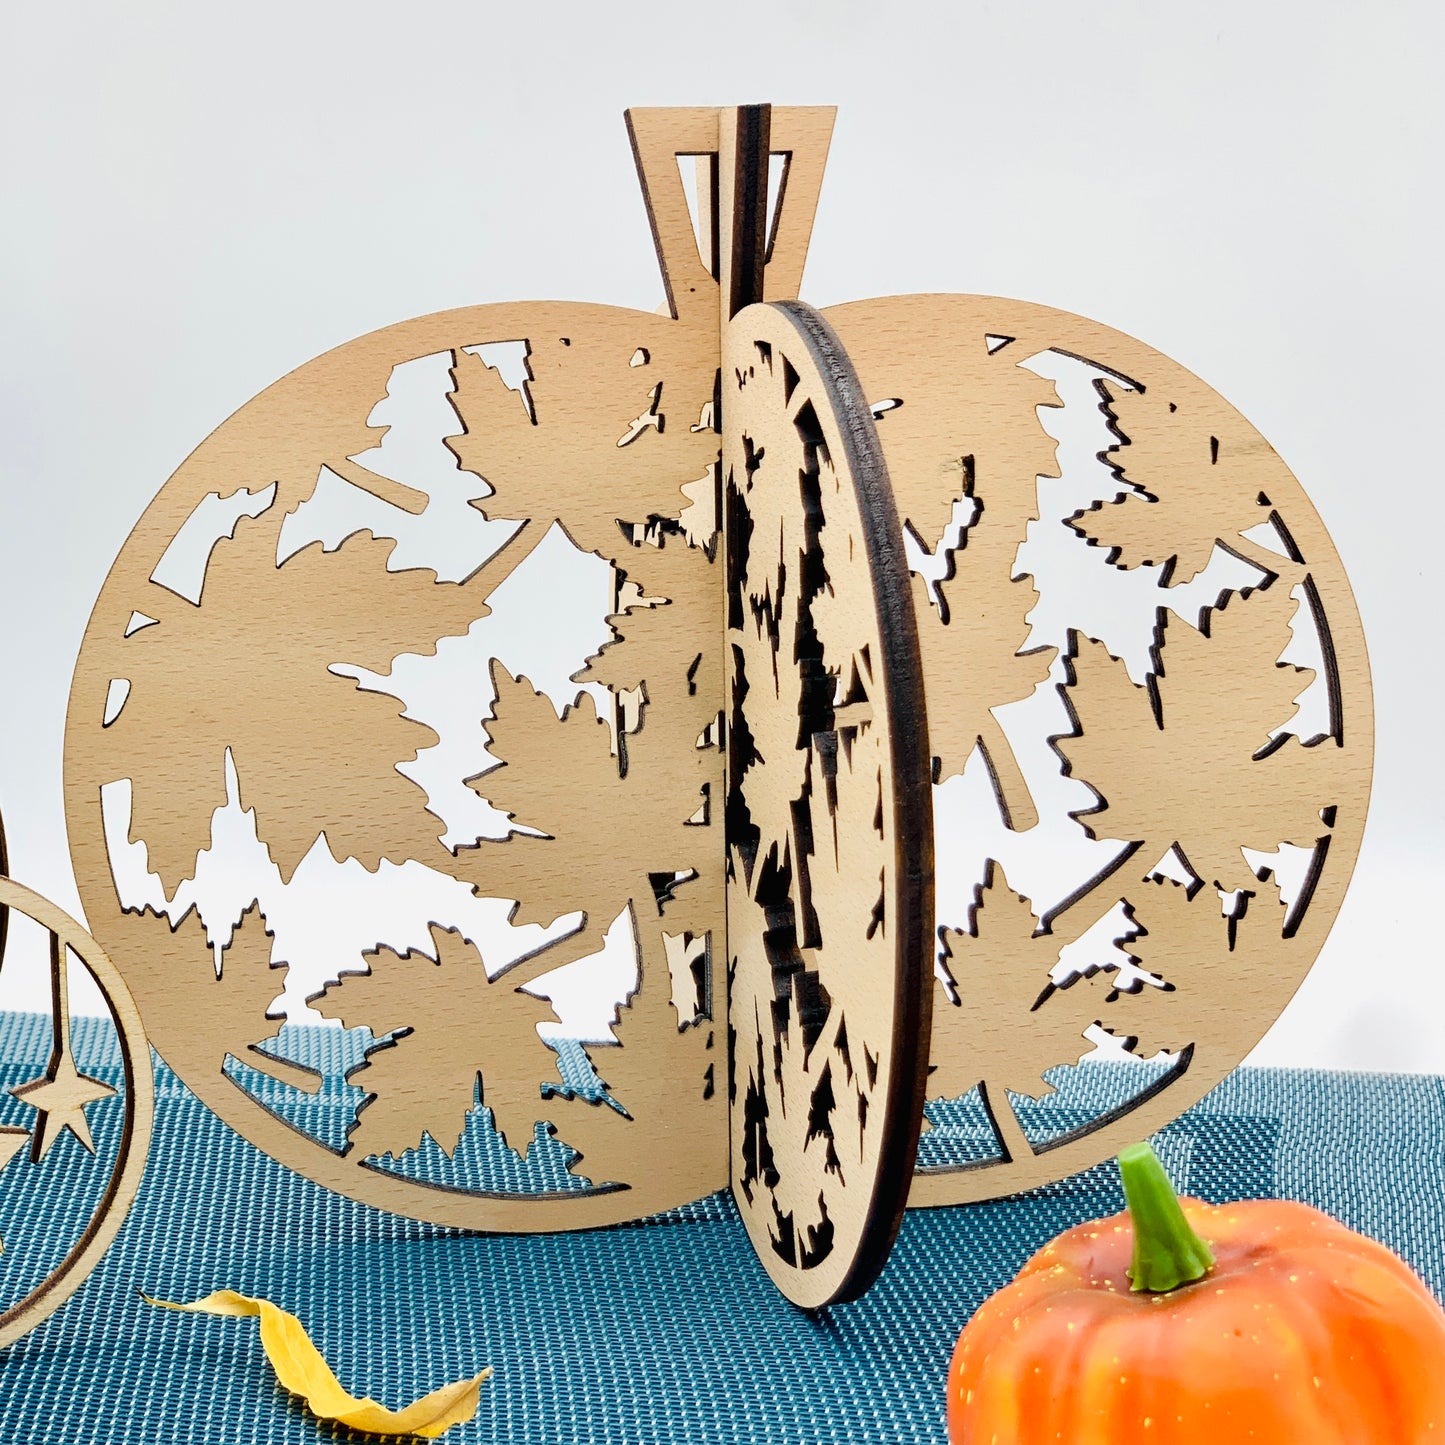 3D Kürbis Holz - Herbstdeko Hauseingang - Tischdeko Kürbis - Geschenkidee Herbst - Halloween Kürbis Deko Set - Herbstdeko innen